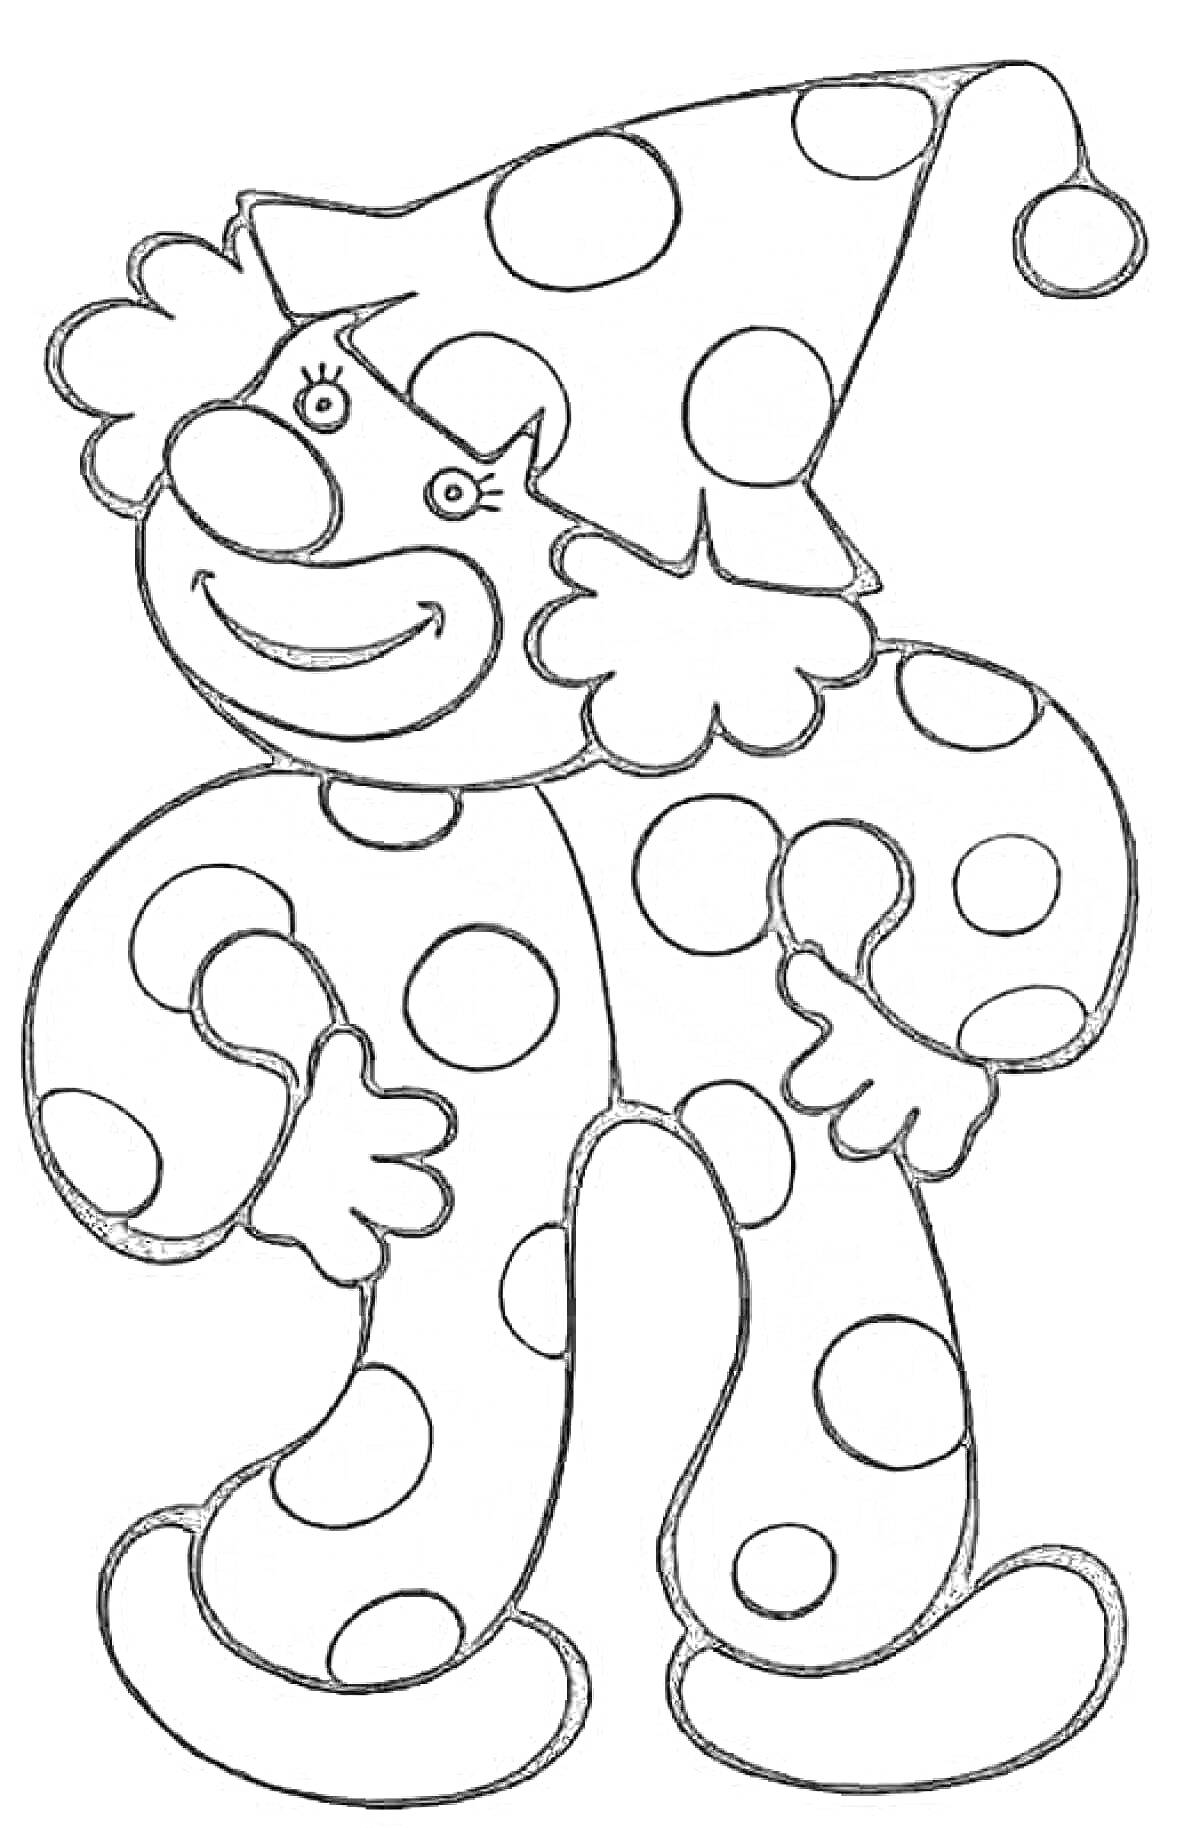 Раскраска Клоун в шапке с помпоном, в большом костюме в горошек, с кудрями и улыбкой